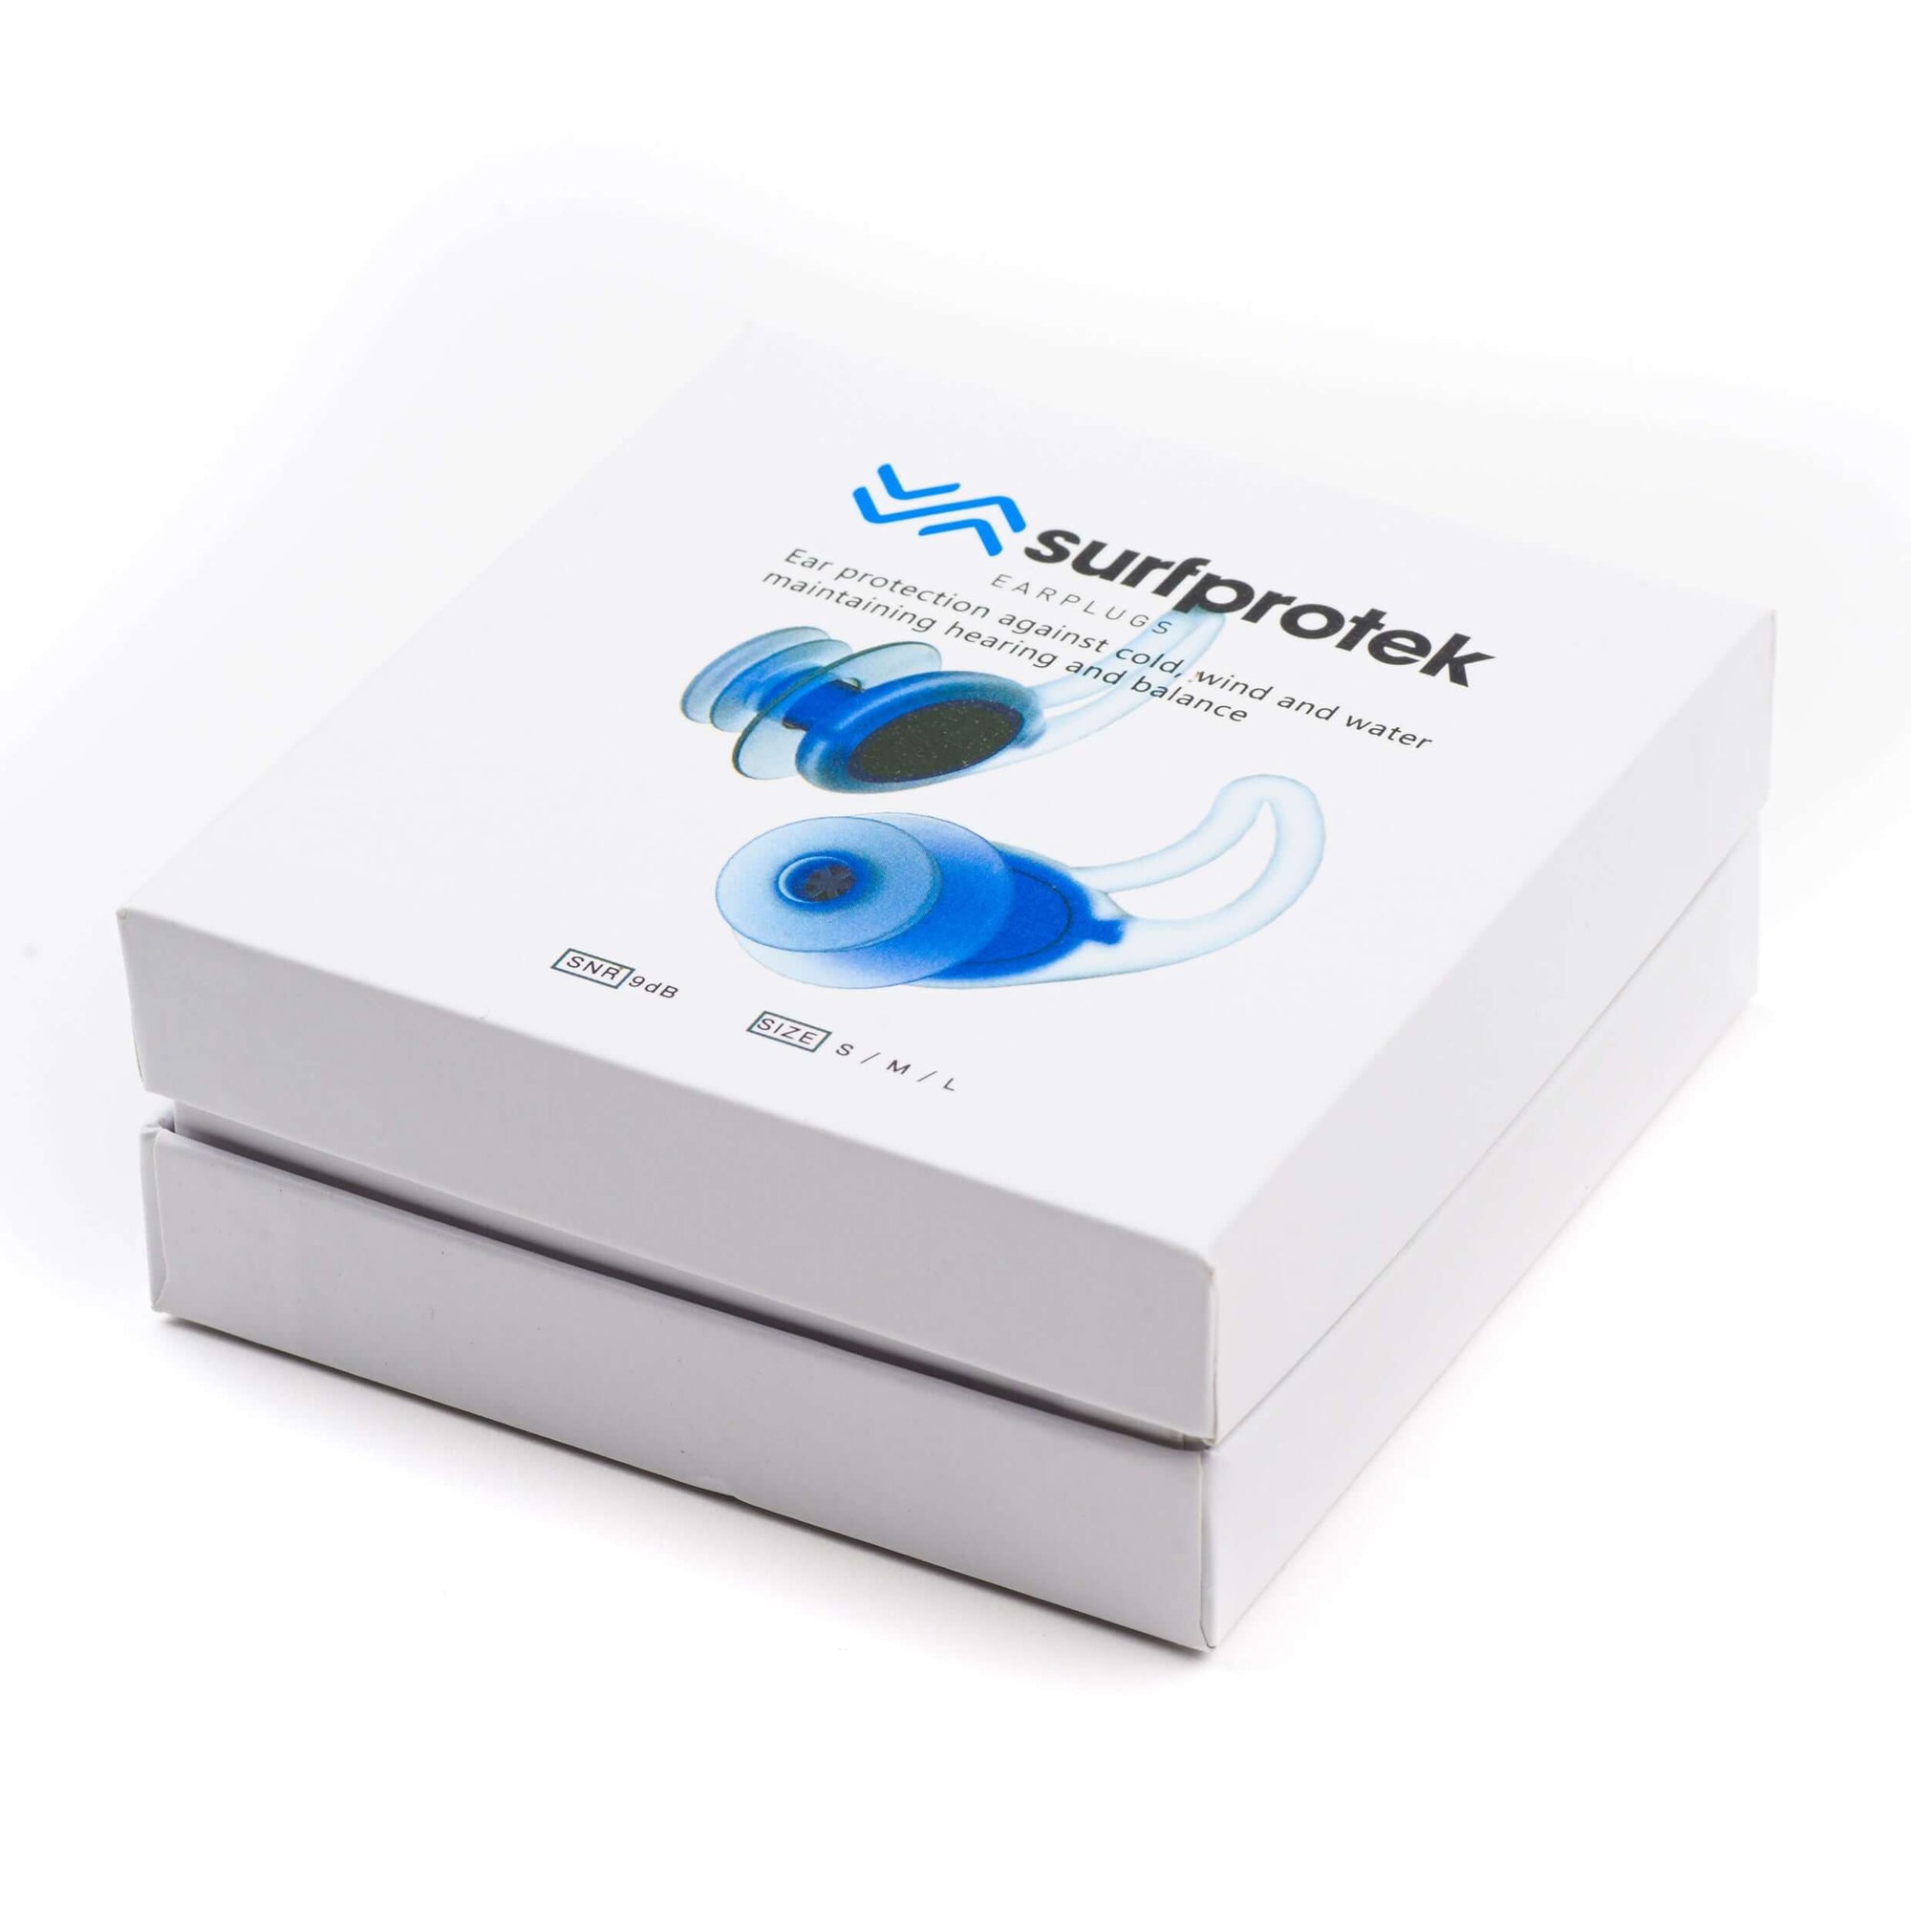 Packaging for surfprotek ear plugs